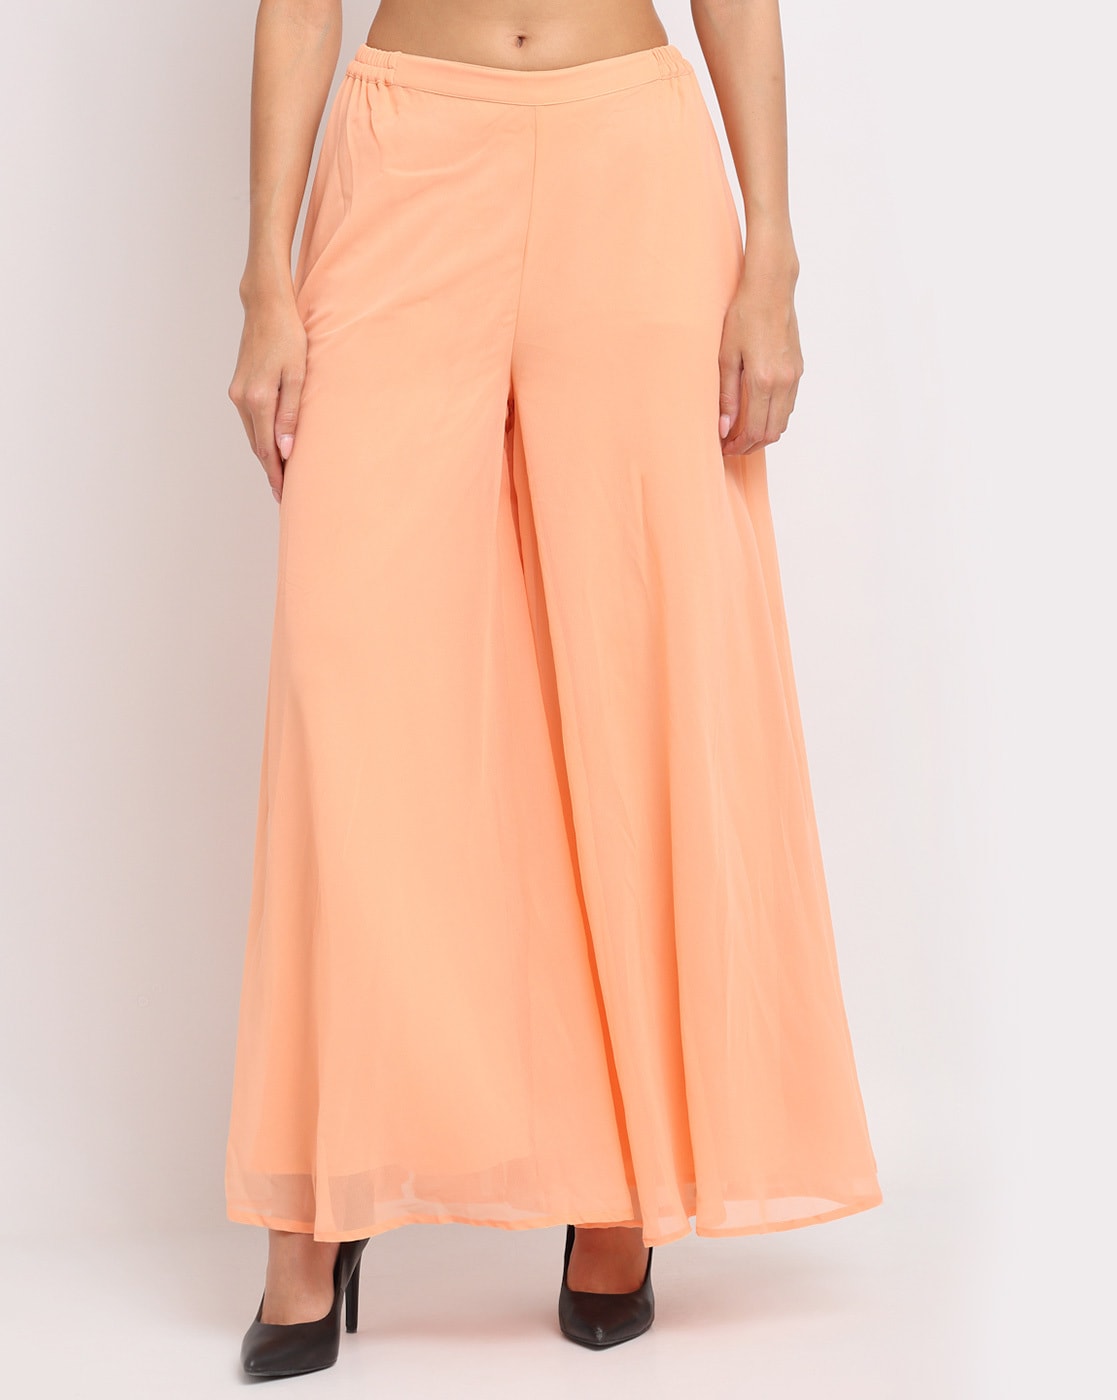 VESFRITA Flared Women Pink Trousers  Buy VESFRITA Flared Women Pink  Trousers Online at Best Prices in India  Flipkartcom